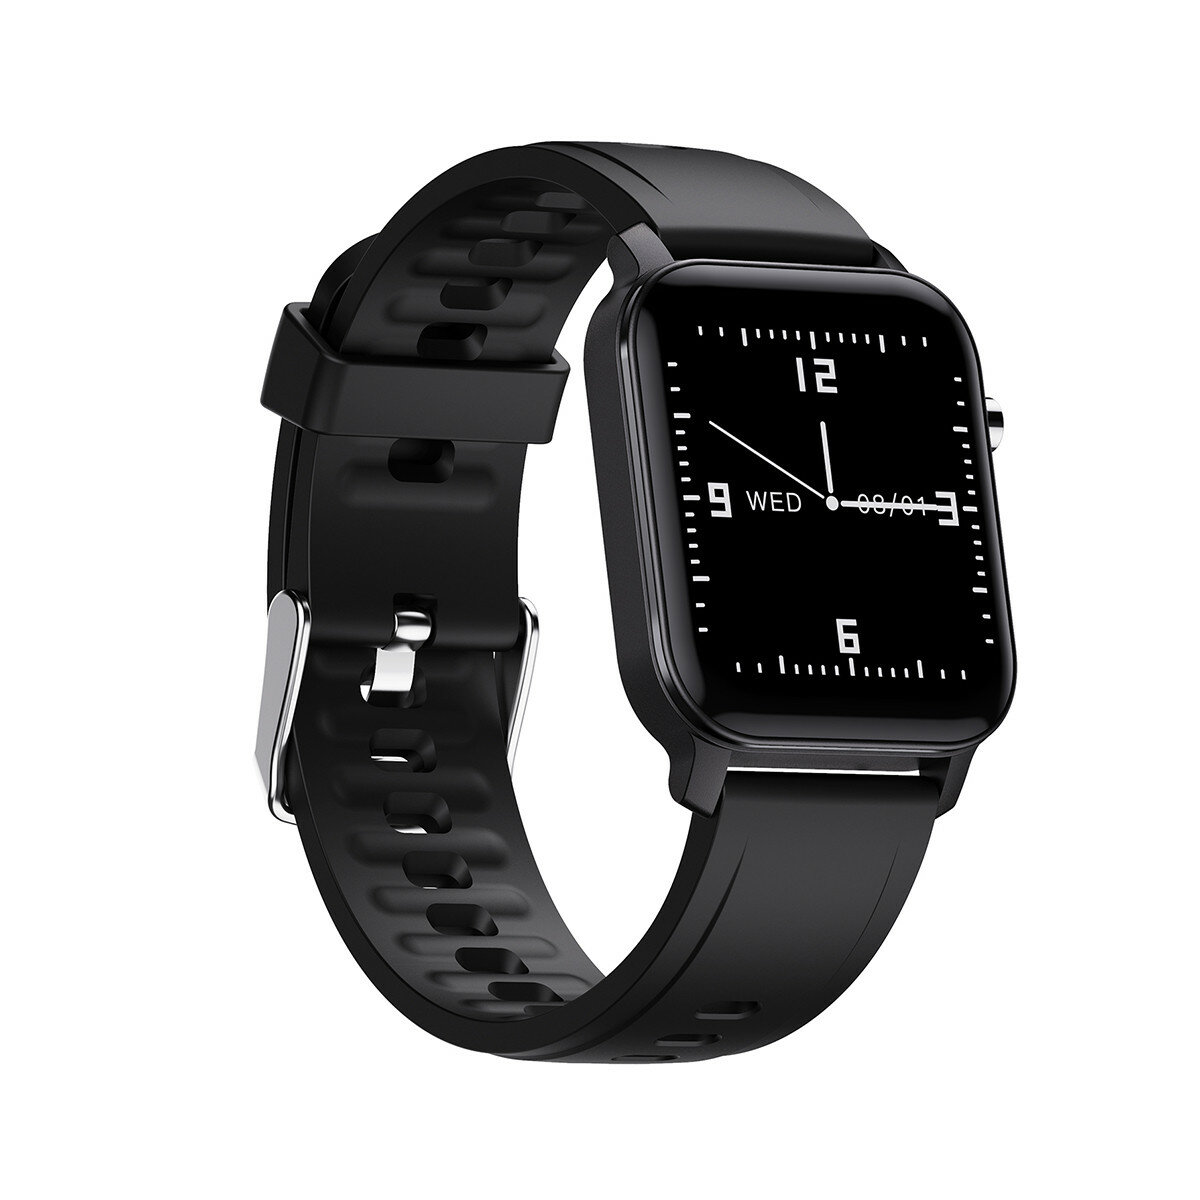 [BT 5.0] Bakeey M2 Ultradünnes 1,4-Zoll-Quadrat-Display Armband Herzfrequenz-Blutsauerstoffmonitor 24-Stunden-Aktivitäts-Tracker Smart Watch